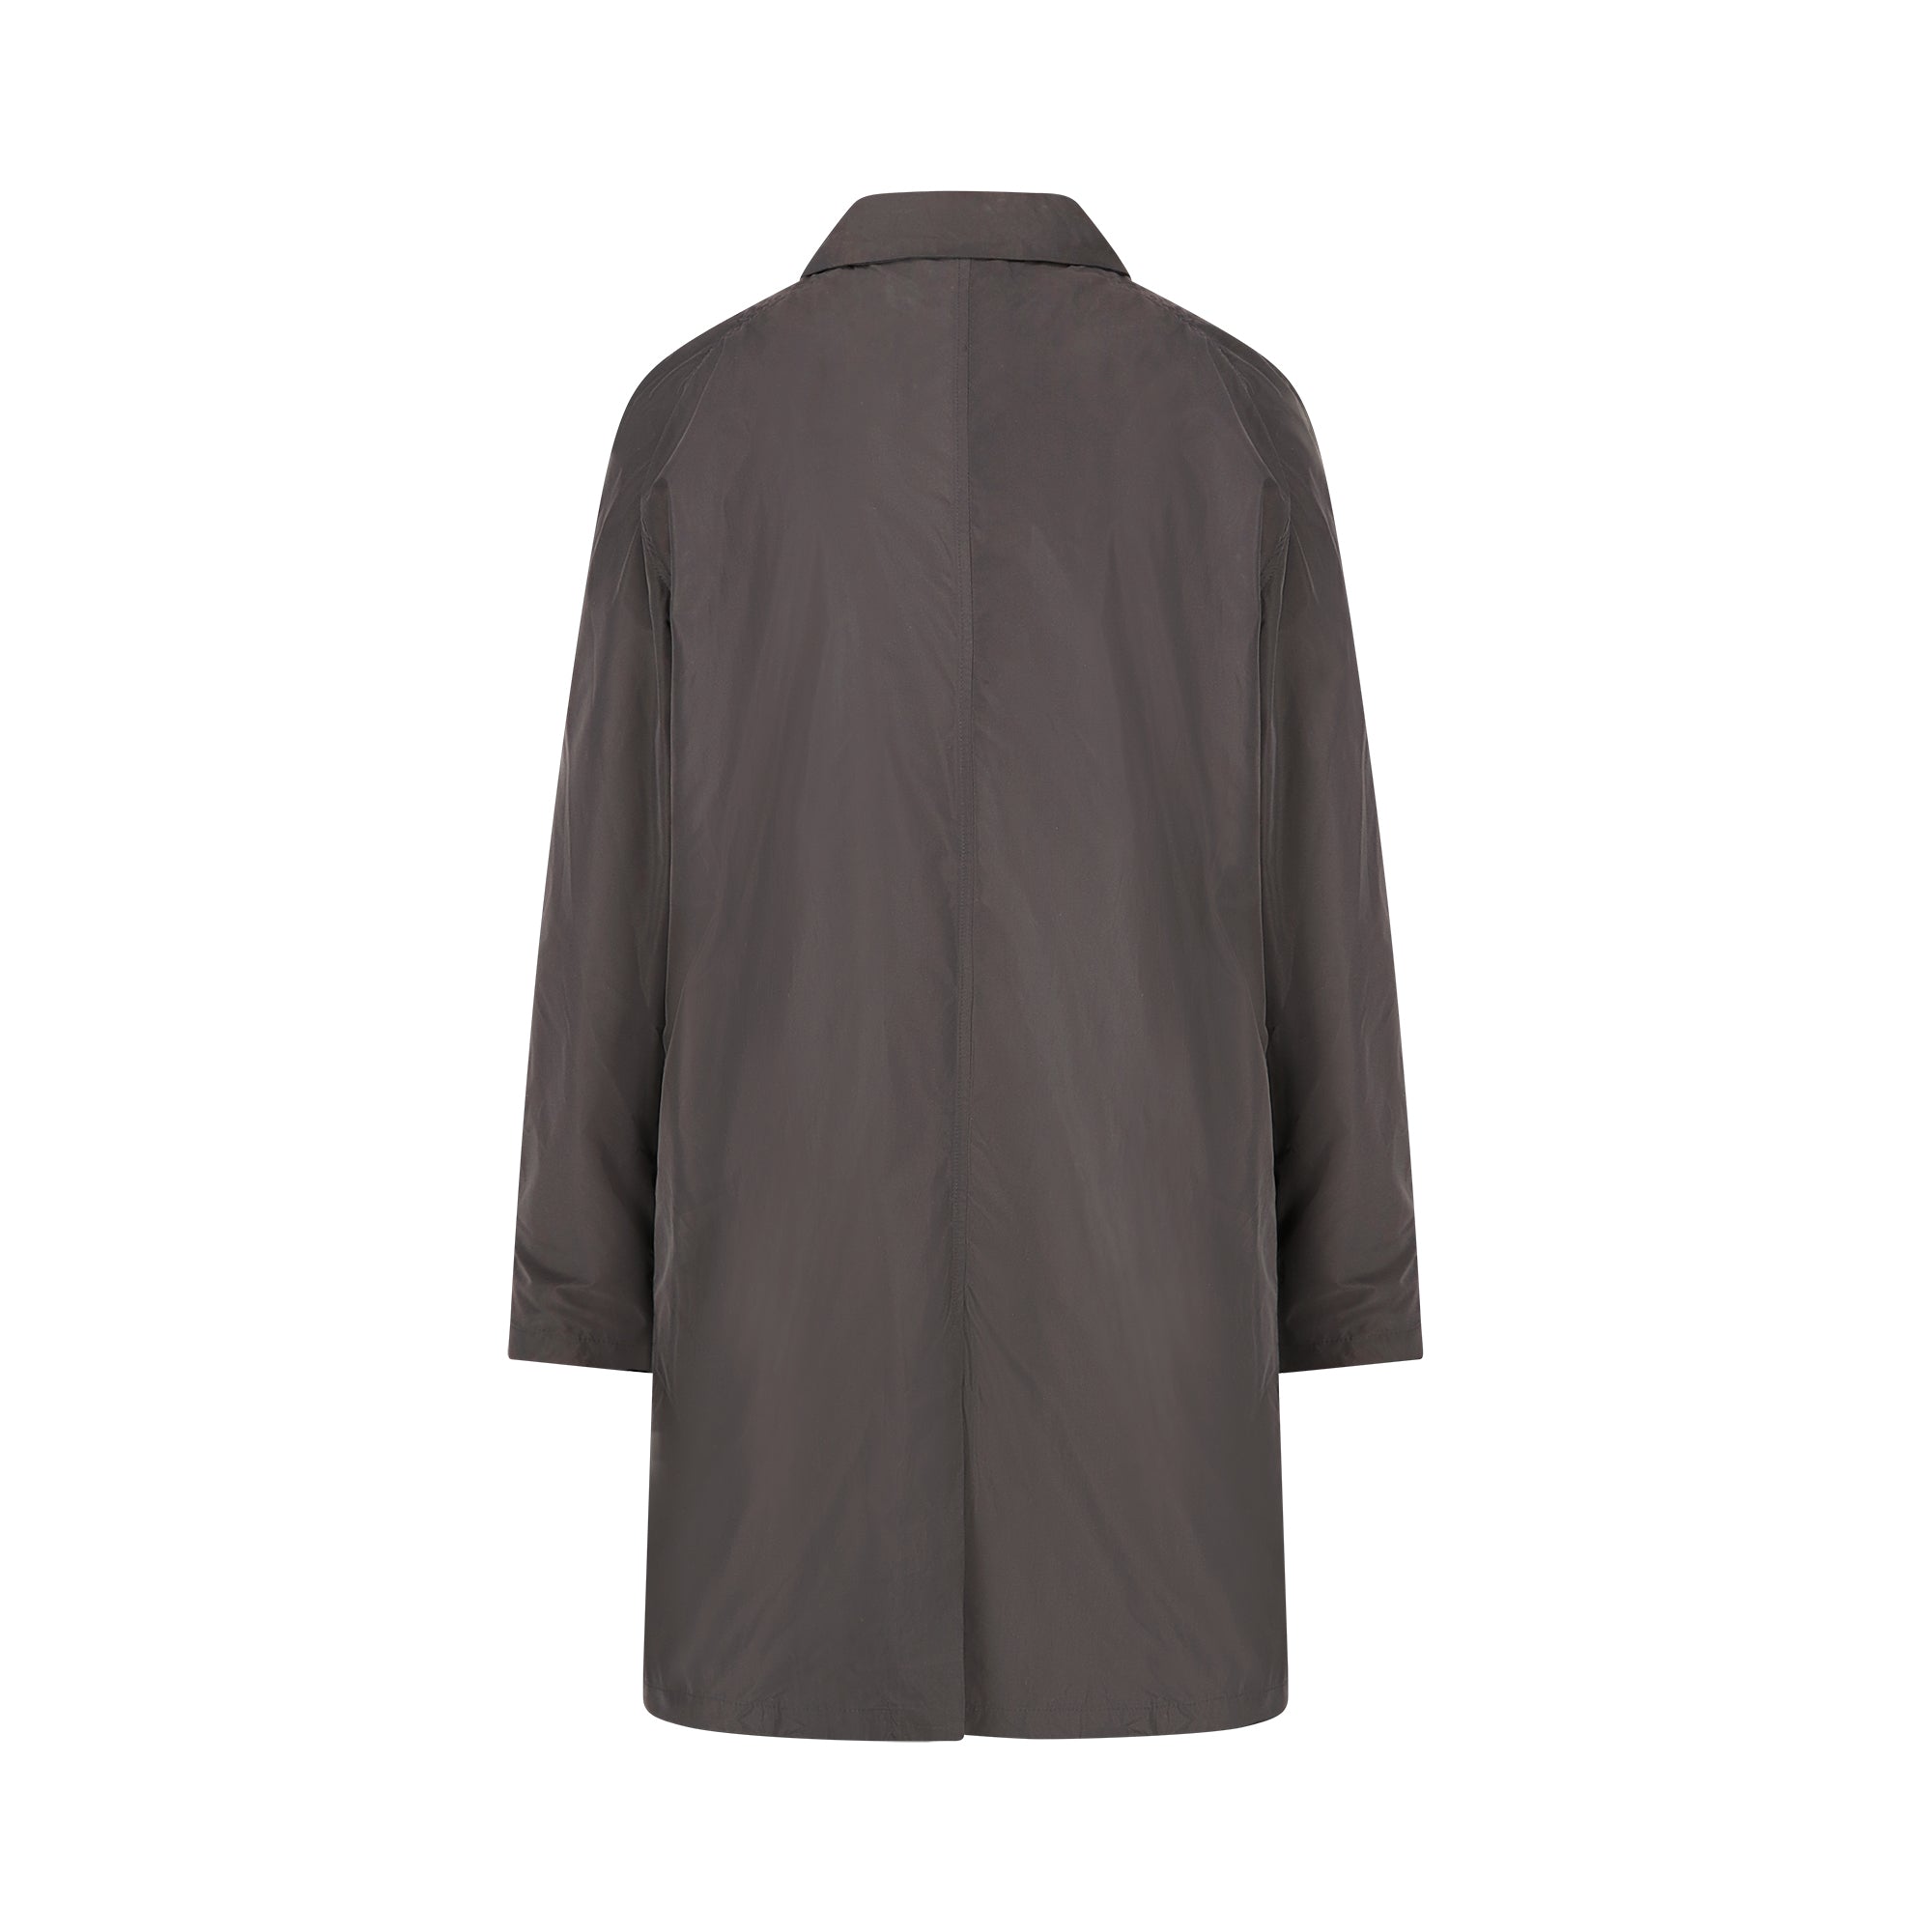 Strato men's raincoat - dark grey color - back view